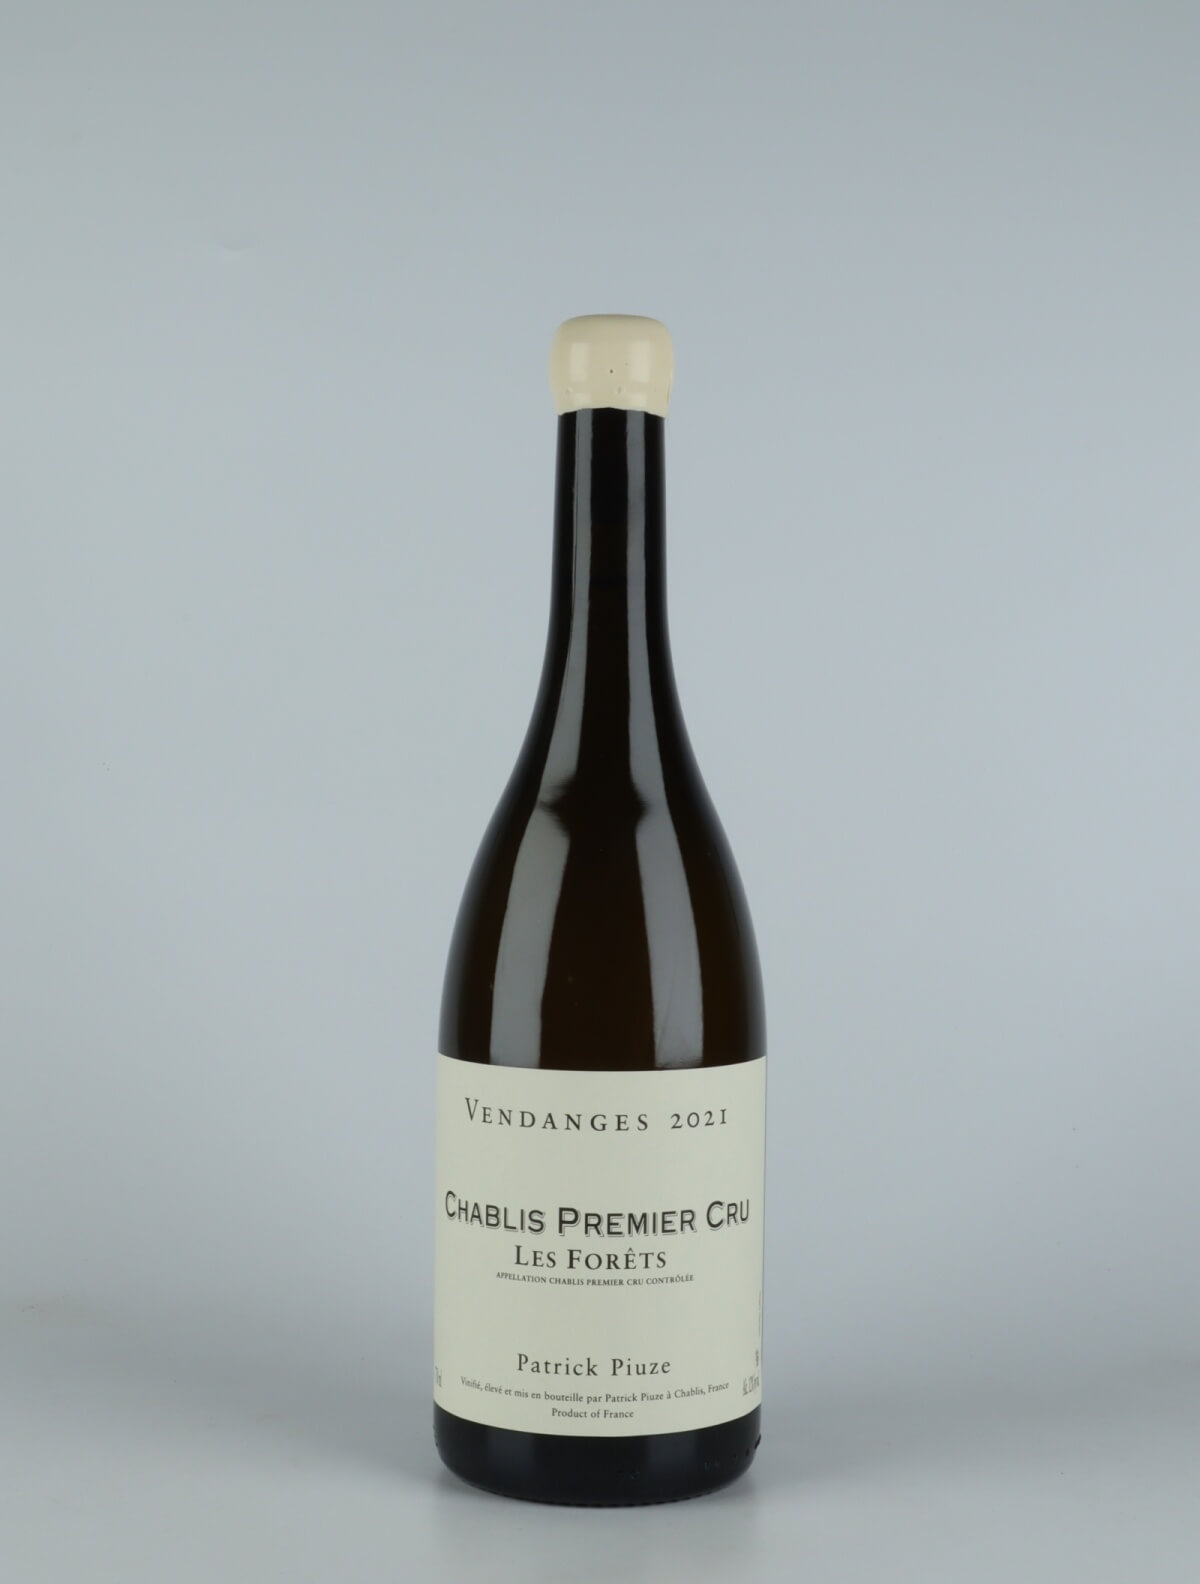 En flaske 2021 Chablis 1. Cru - Les Forêts Hvidvin fra Patrick Piuze, Bourgogne i Frankrig